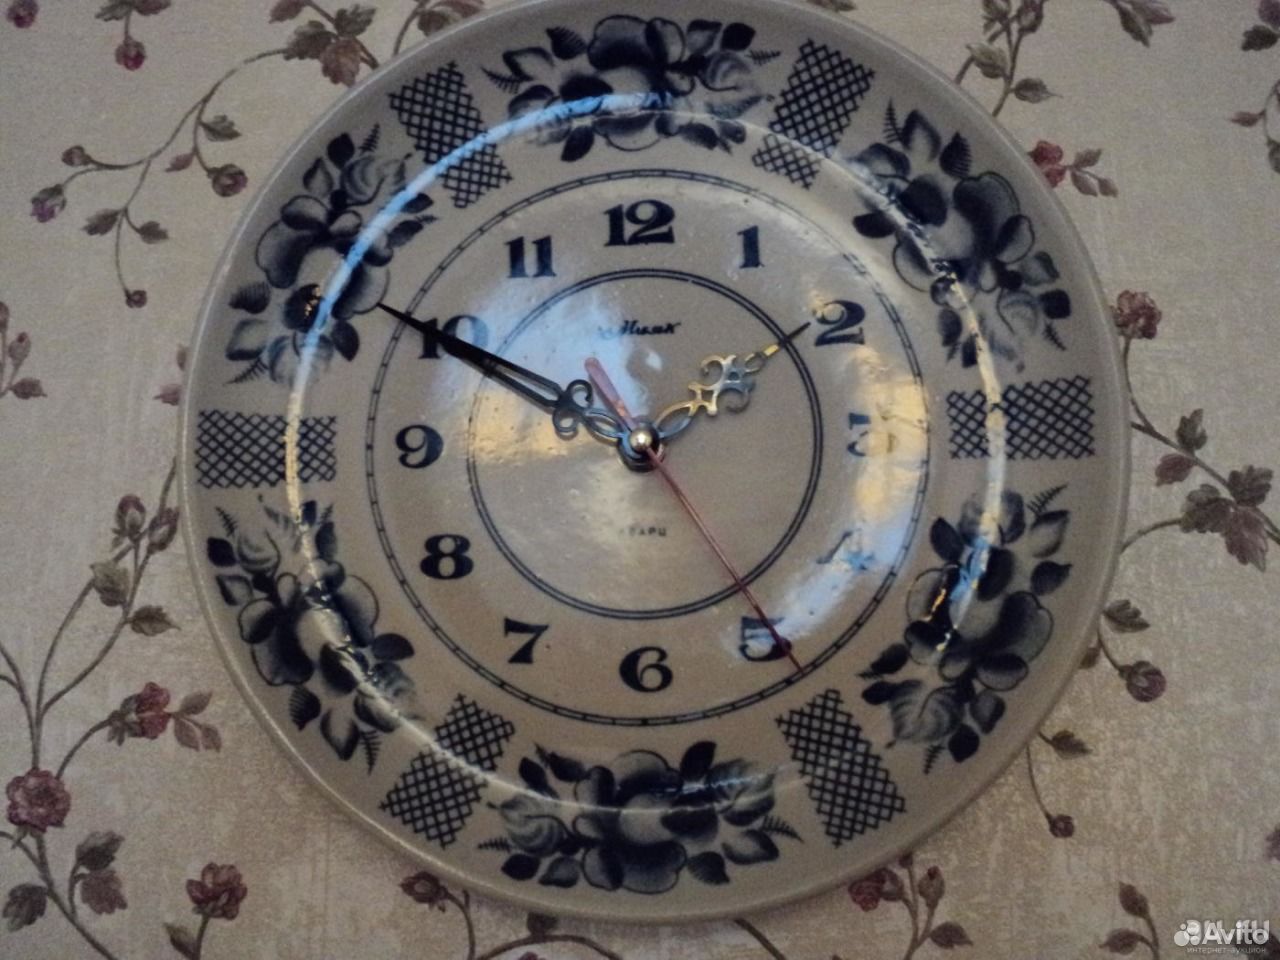 Часы Маяк кварц настенные СССР